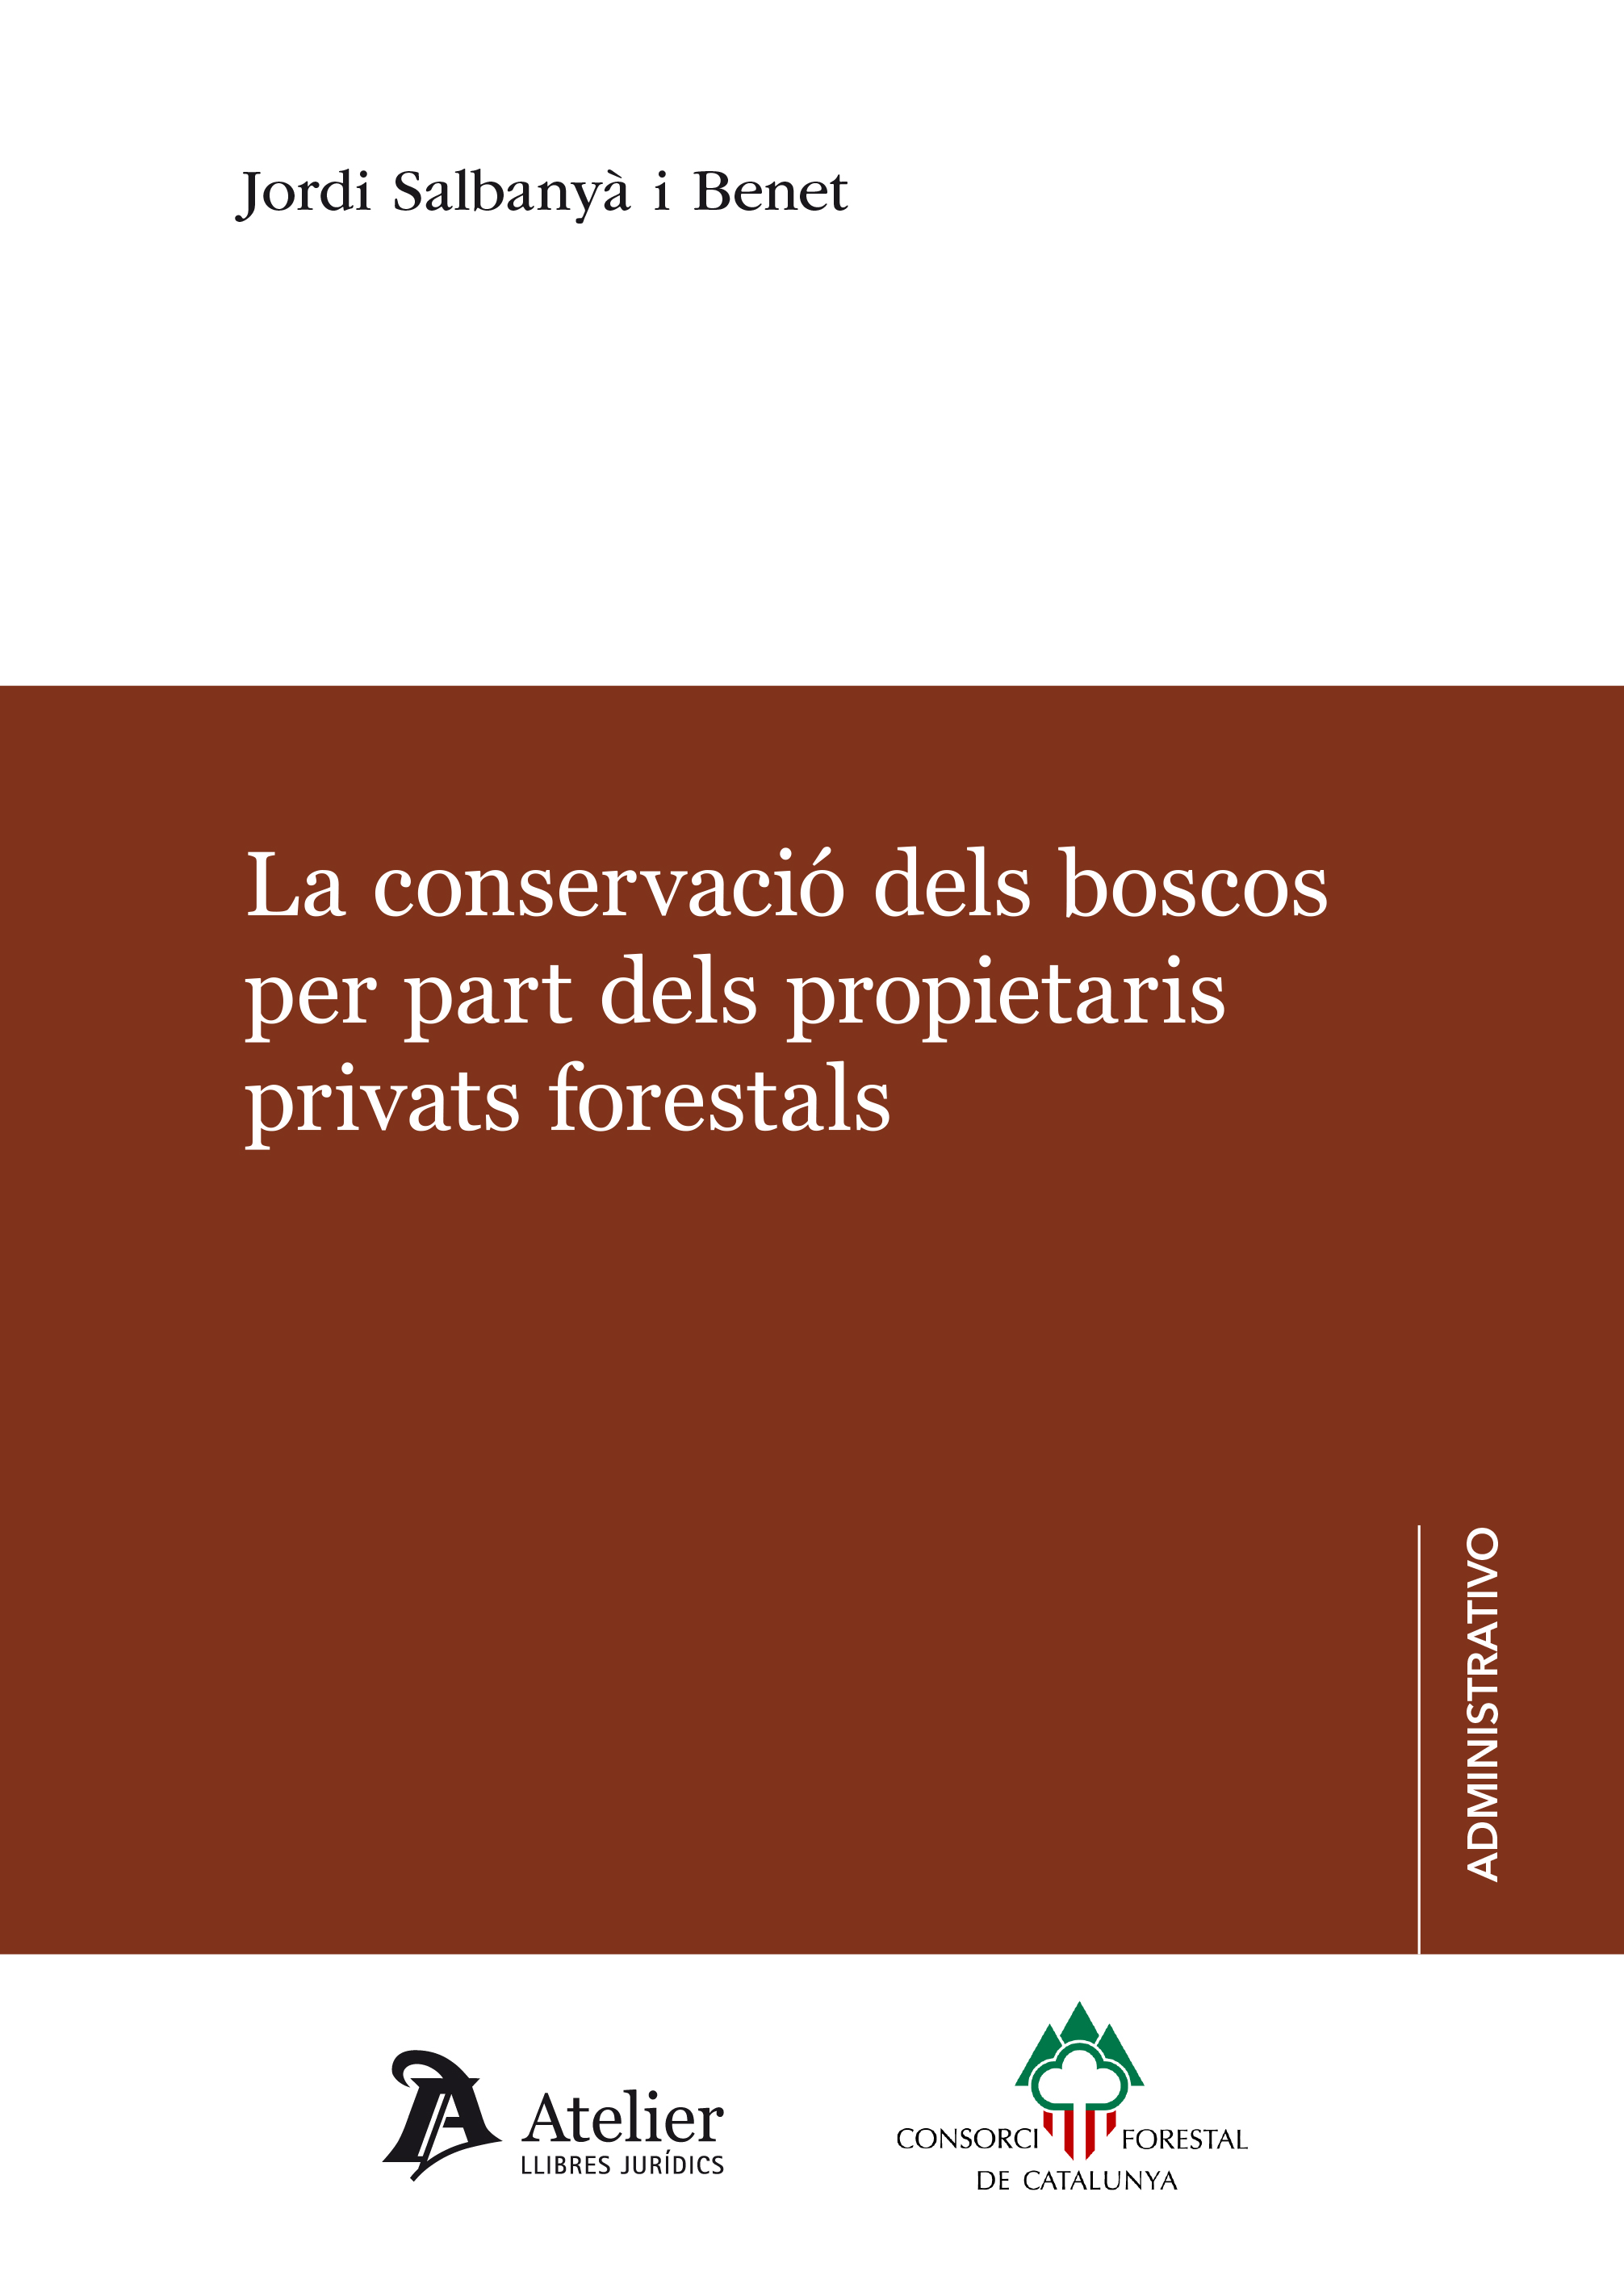 La conservació dels boscos per part dels propietaris privats forestals